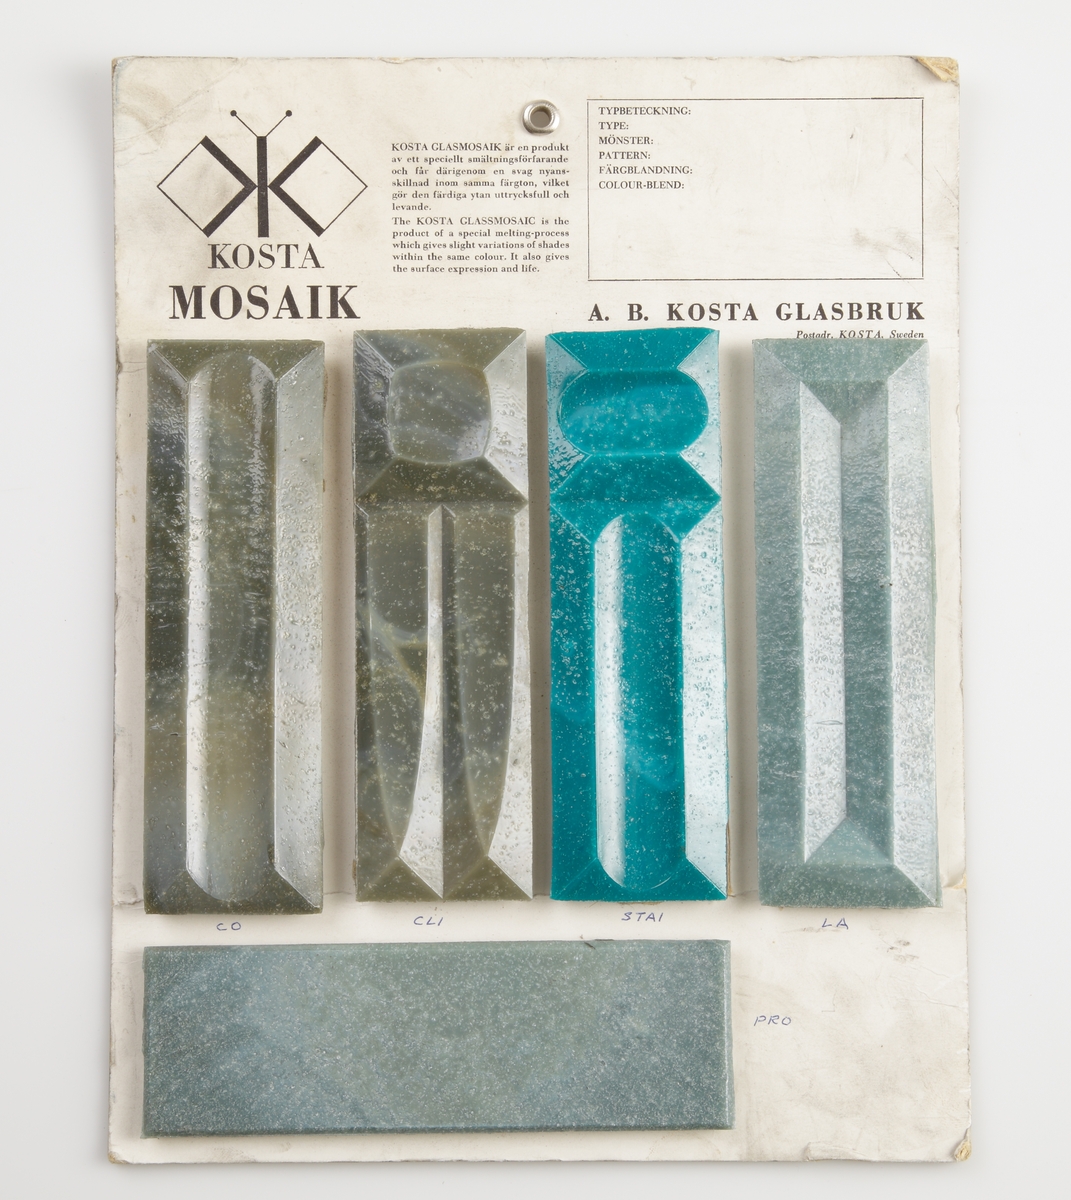 Färgtavla på Kosta Mosaik. 5 rektangulära mosaikbitar i grått och gråblått. Måtten 145x45mm anger måtten på varje mosaikbit.